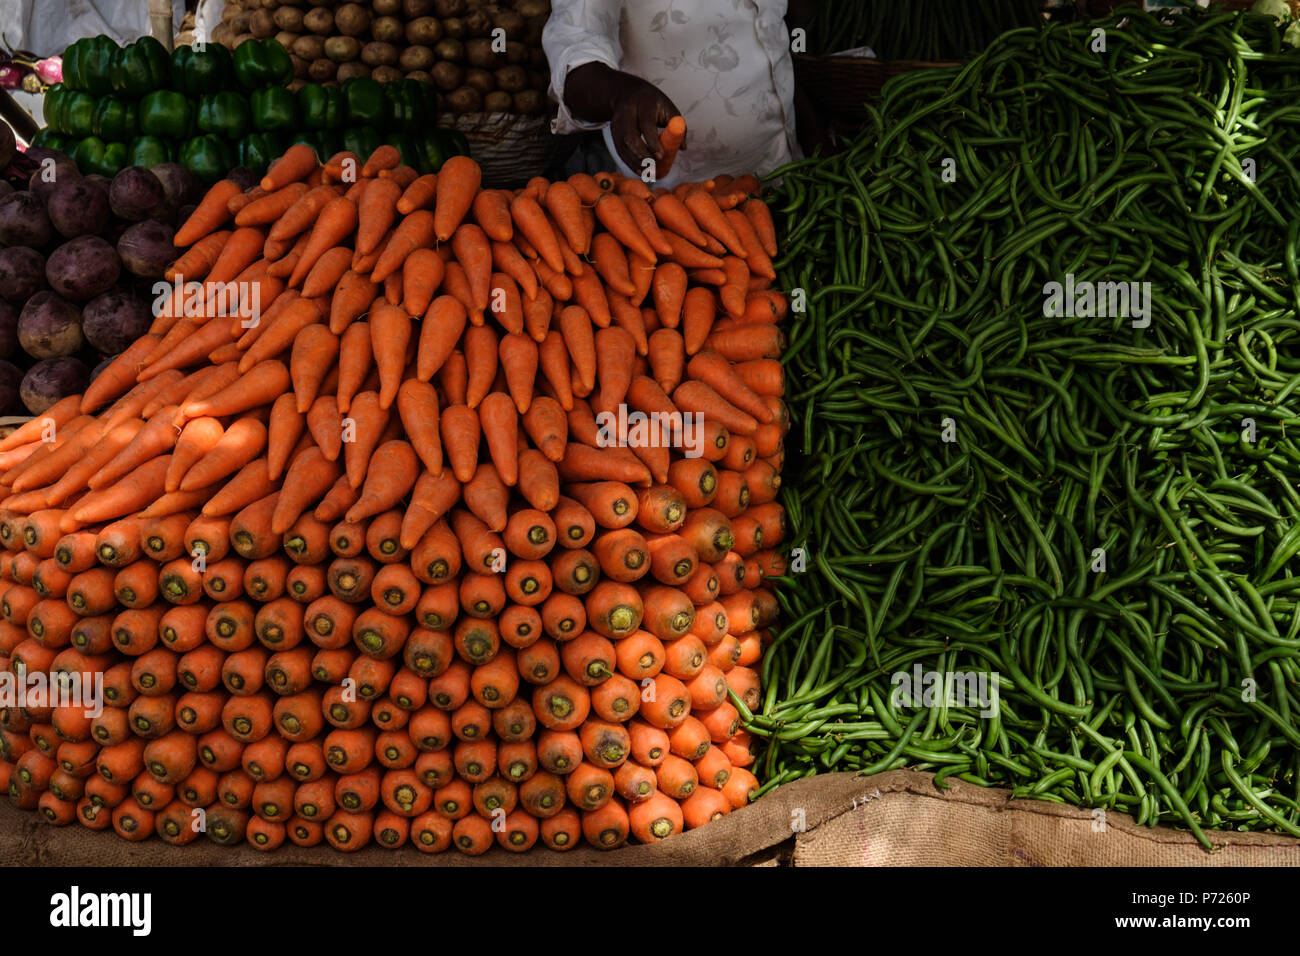 Man frisches indischen Gemüse auf dem Markt, Karotten, cuccumber, grüne Paprika Stockfoto